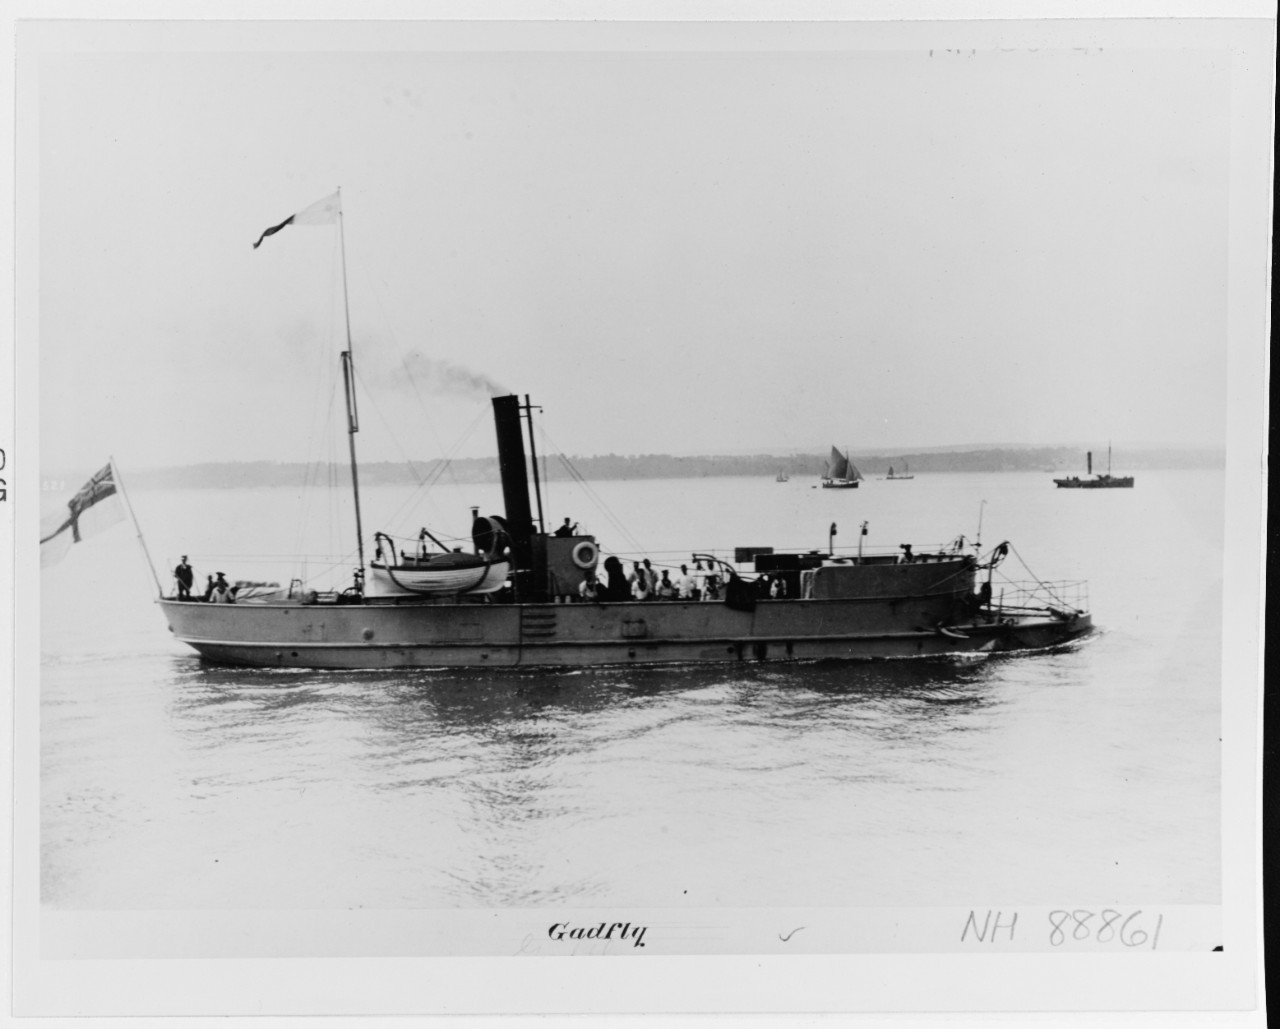 GADFLY (British gunboat, 1879-1918)